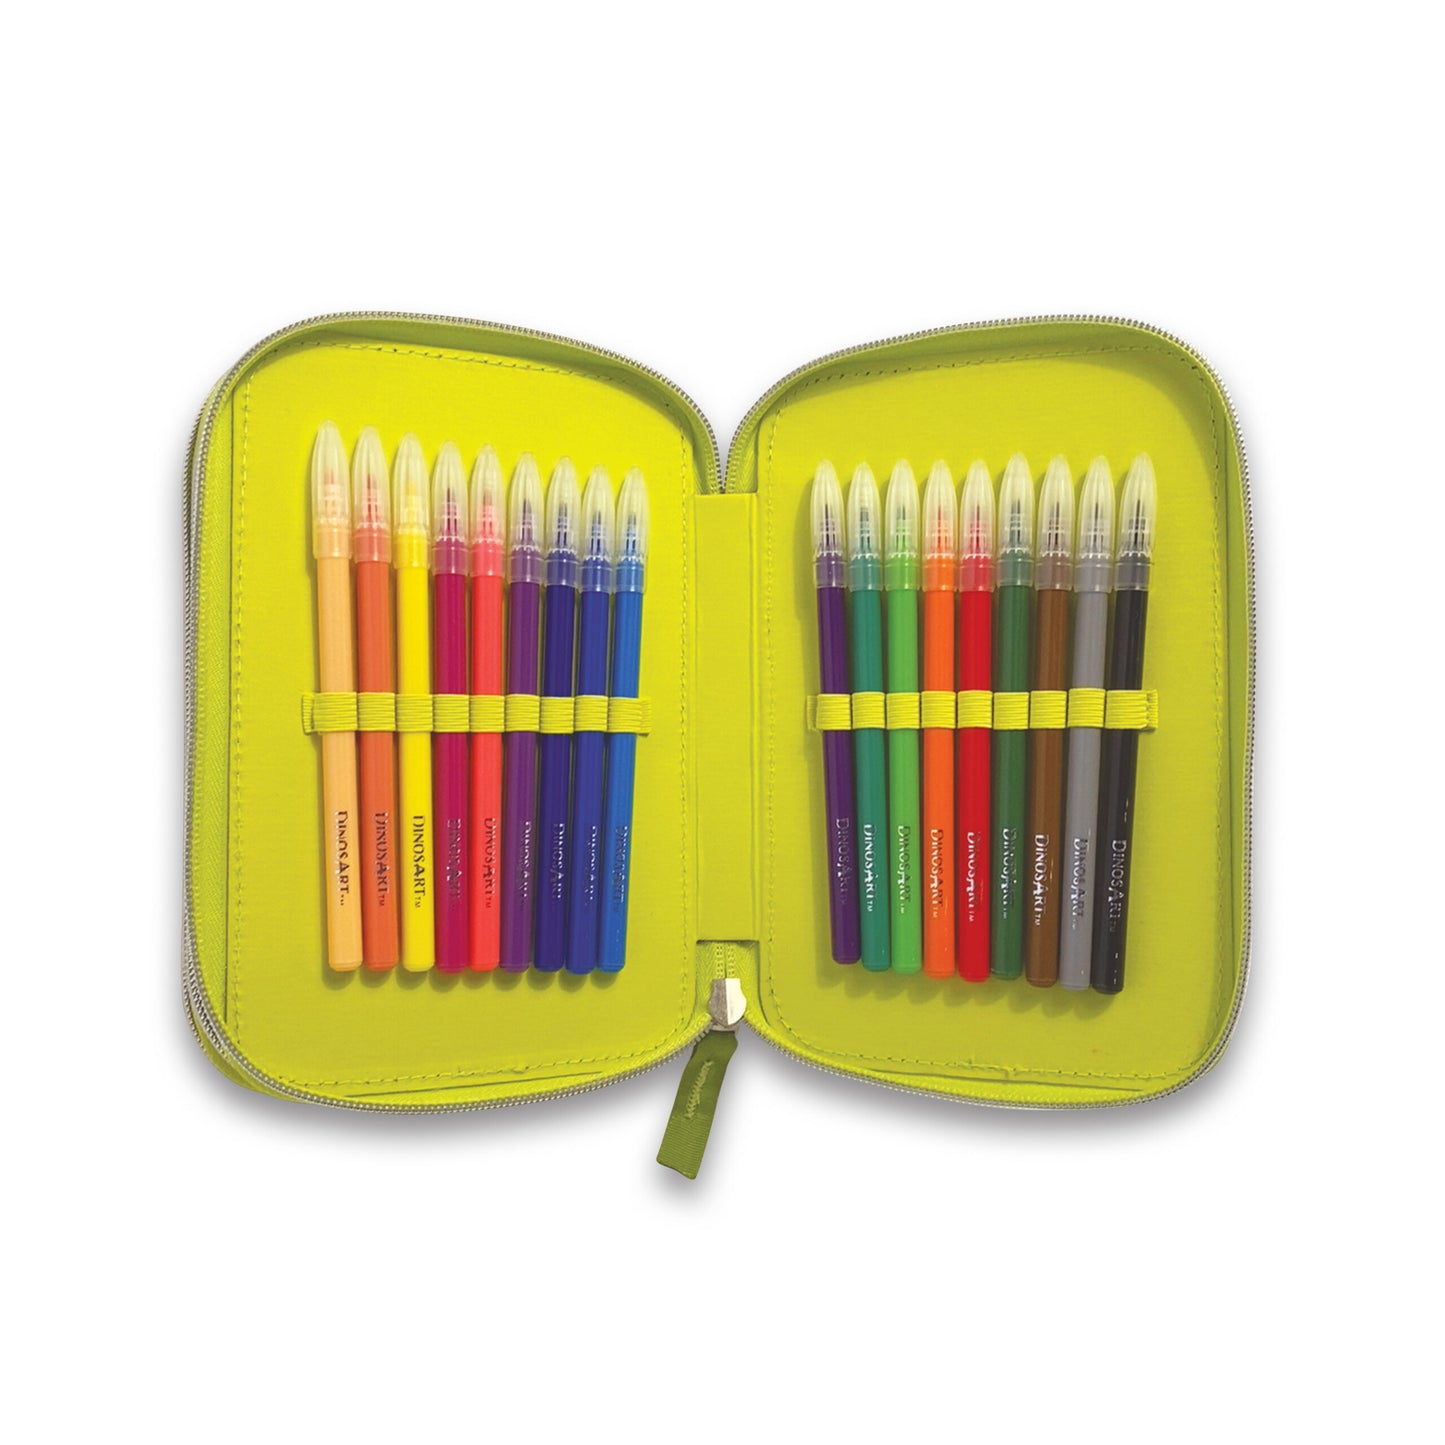 DinosArt 3 Tier Pencil Case